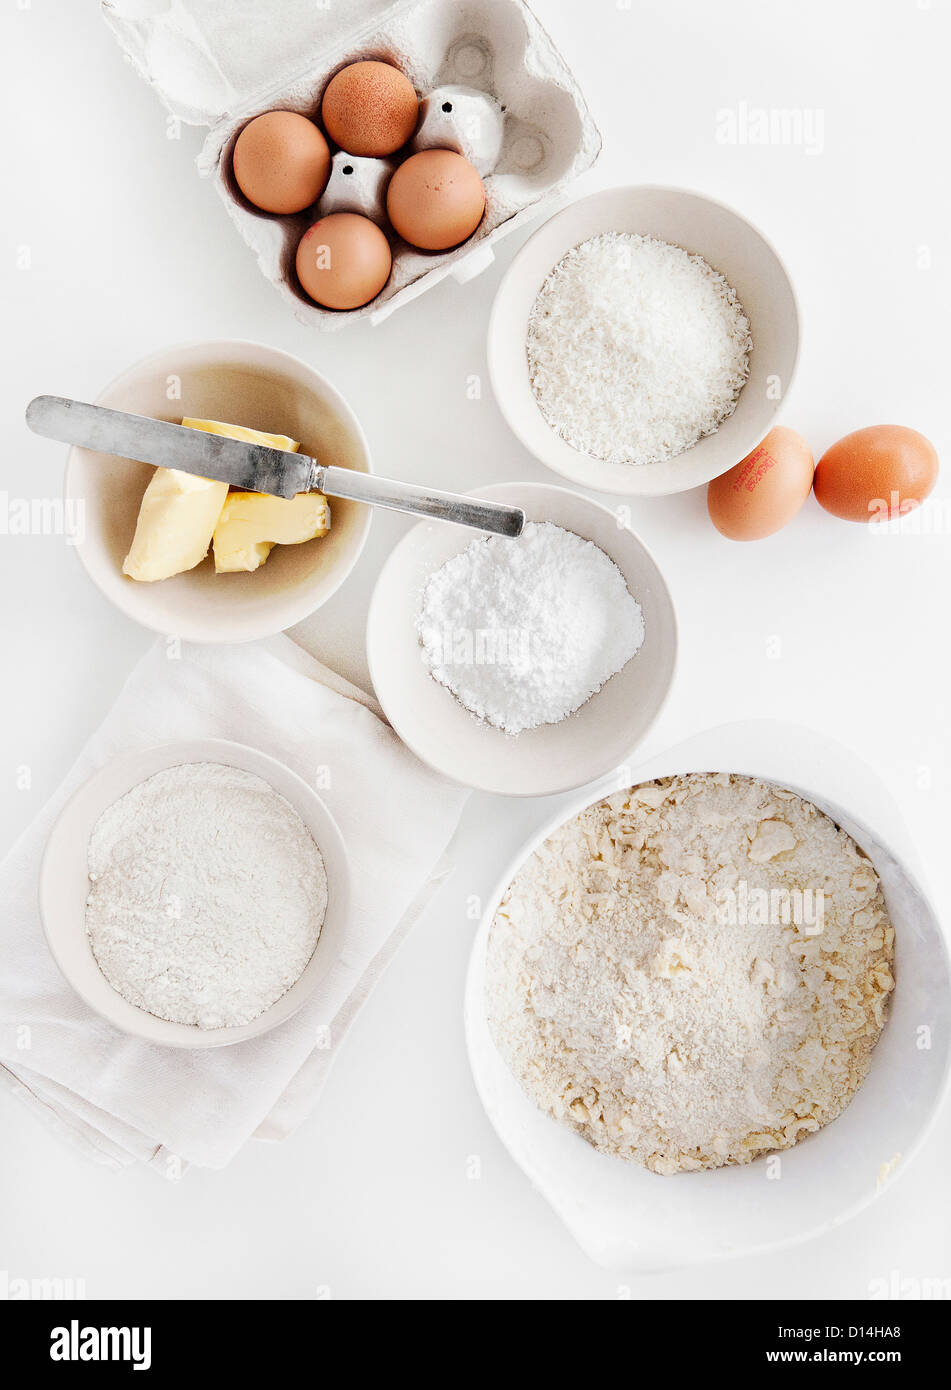 Tazones de azúcar, harina, huevos, mantequilla Foto de stock